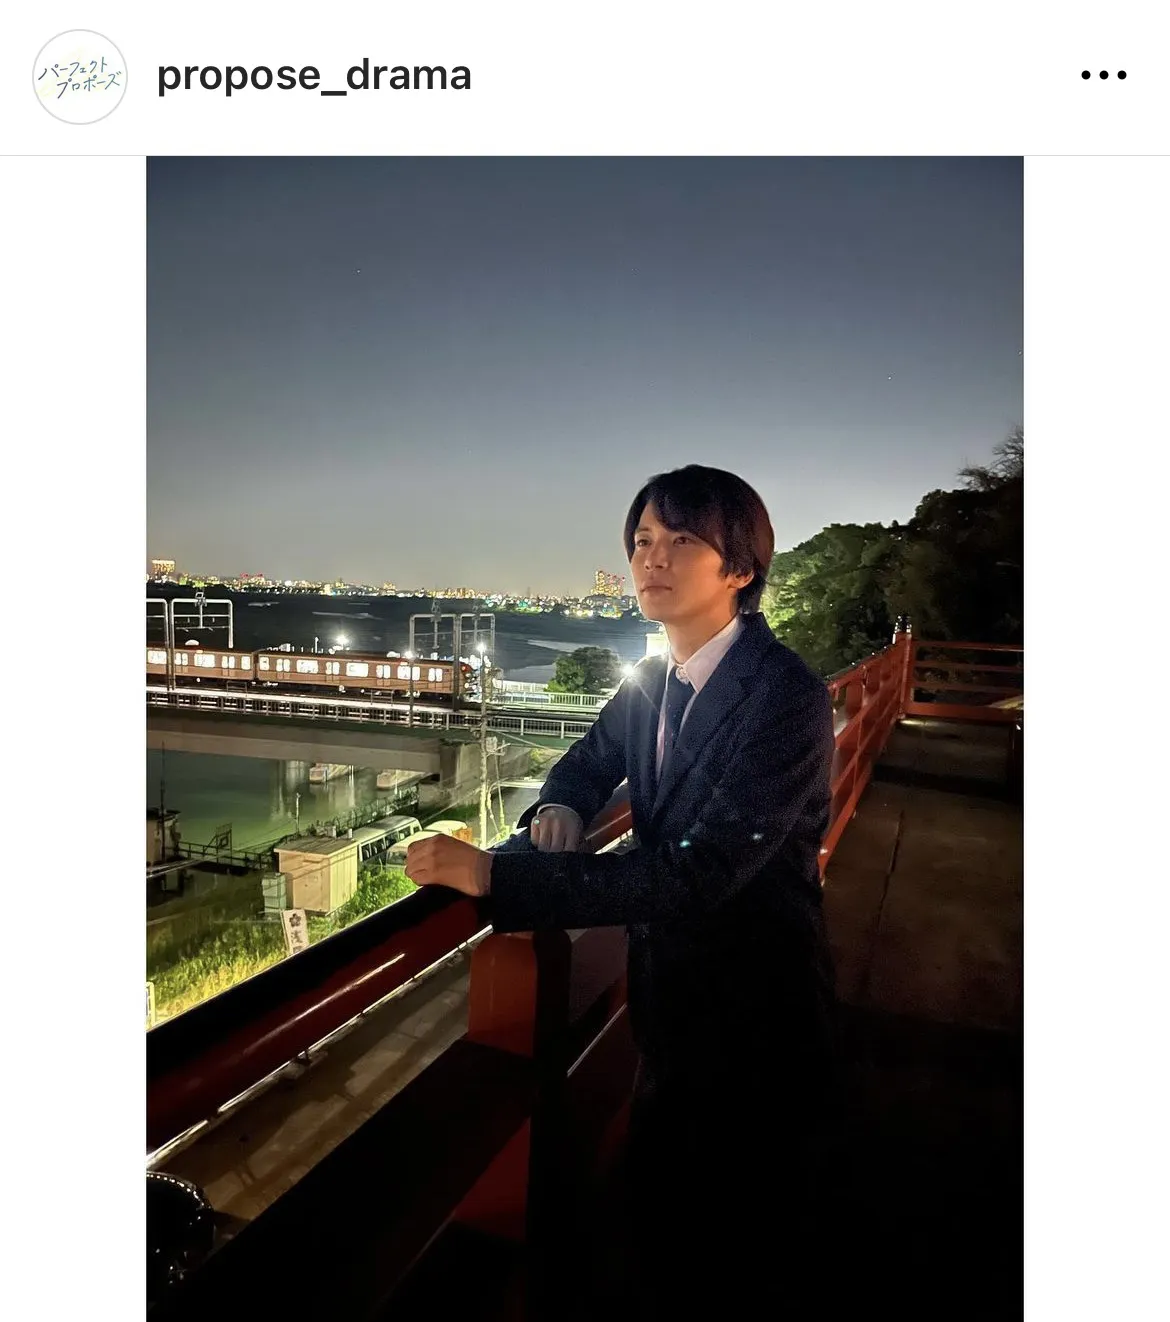  ※画像はドラマ「パーフェクトプロポーズ」公式Instagram(propose_drama)より